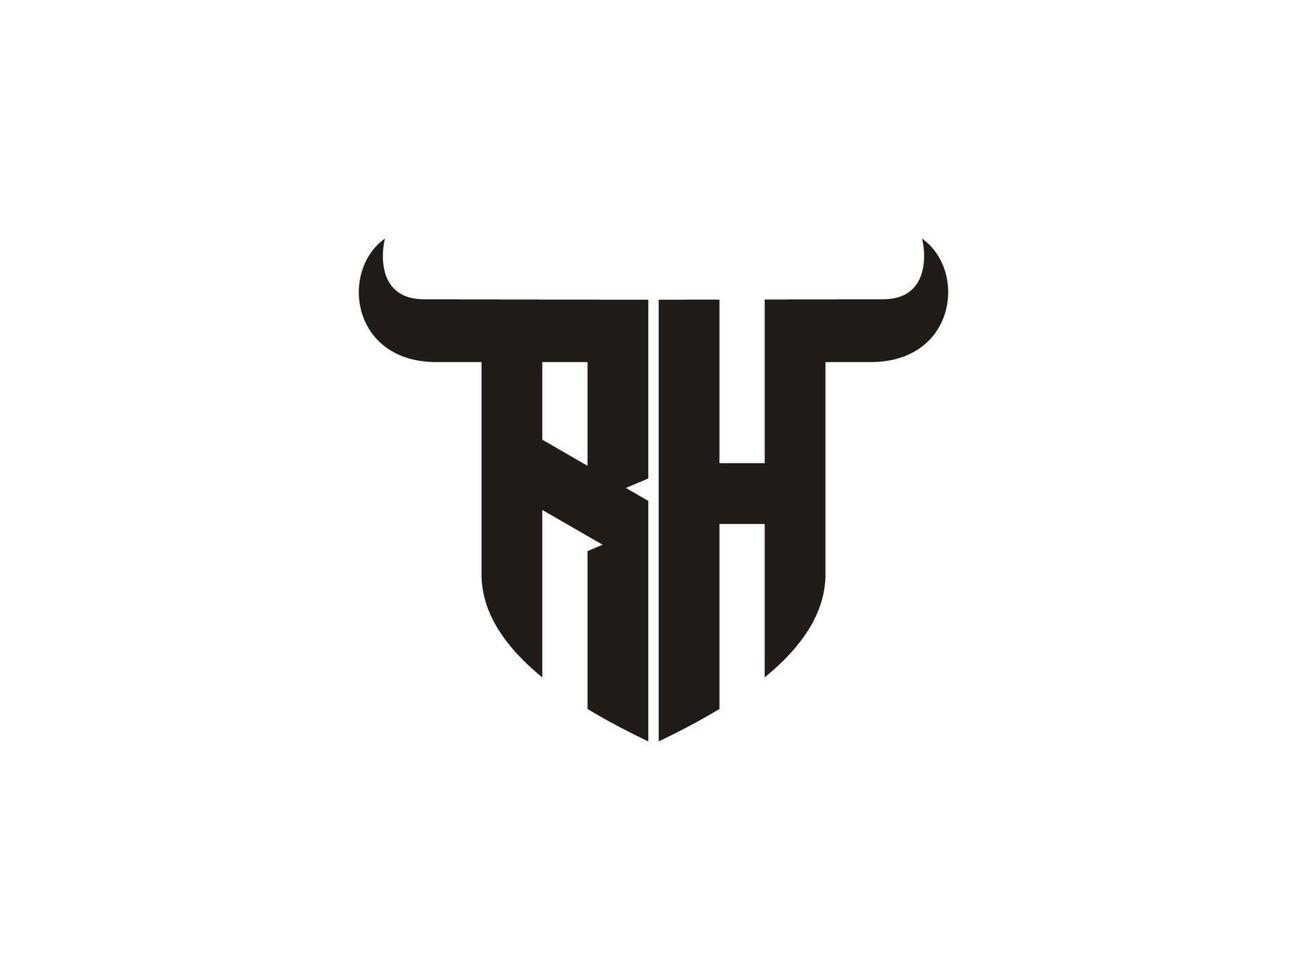 första rh tjur logotyp design. vektor